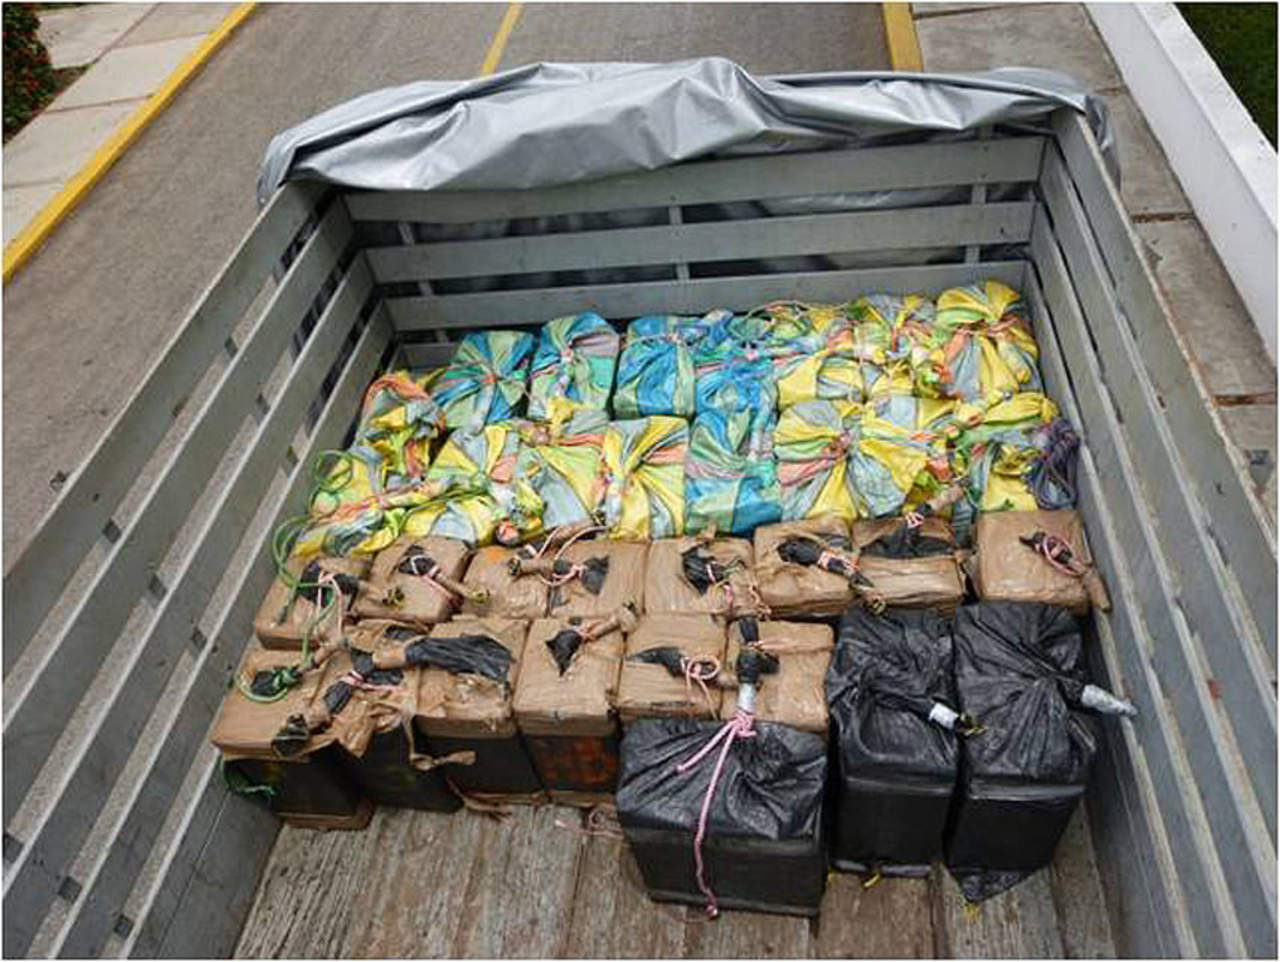 De acuerdo con los informes, la información precisó sobre las actividades ilícitas de dos embarcaciones en altamar que se dedicaban al transporte, entrega y recepción de droga frente a costas mexicanas. (ARCHIVO)